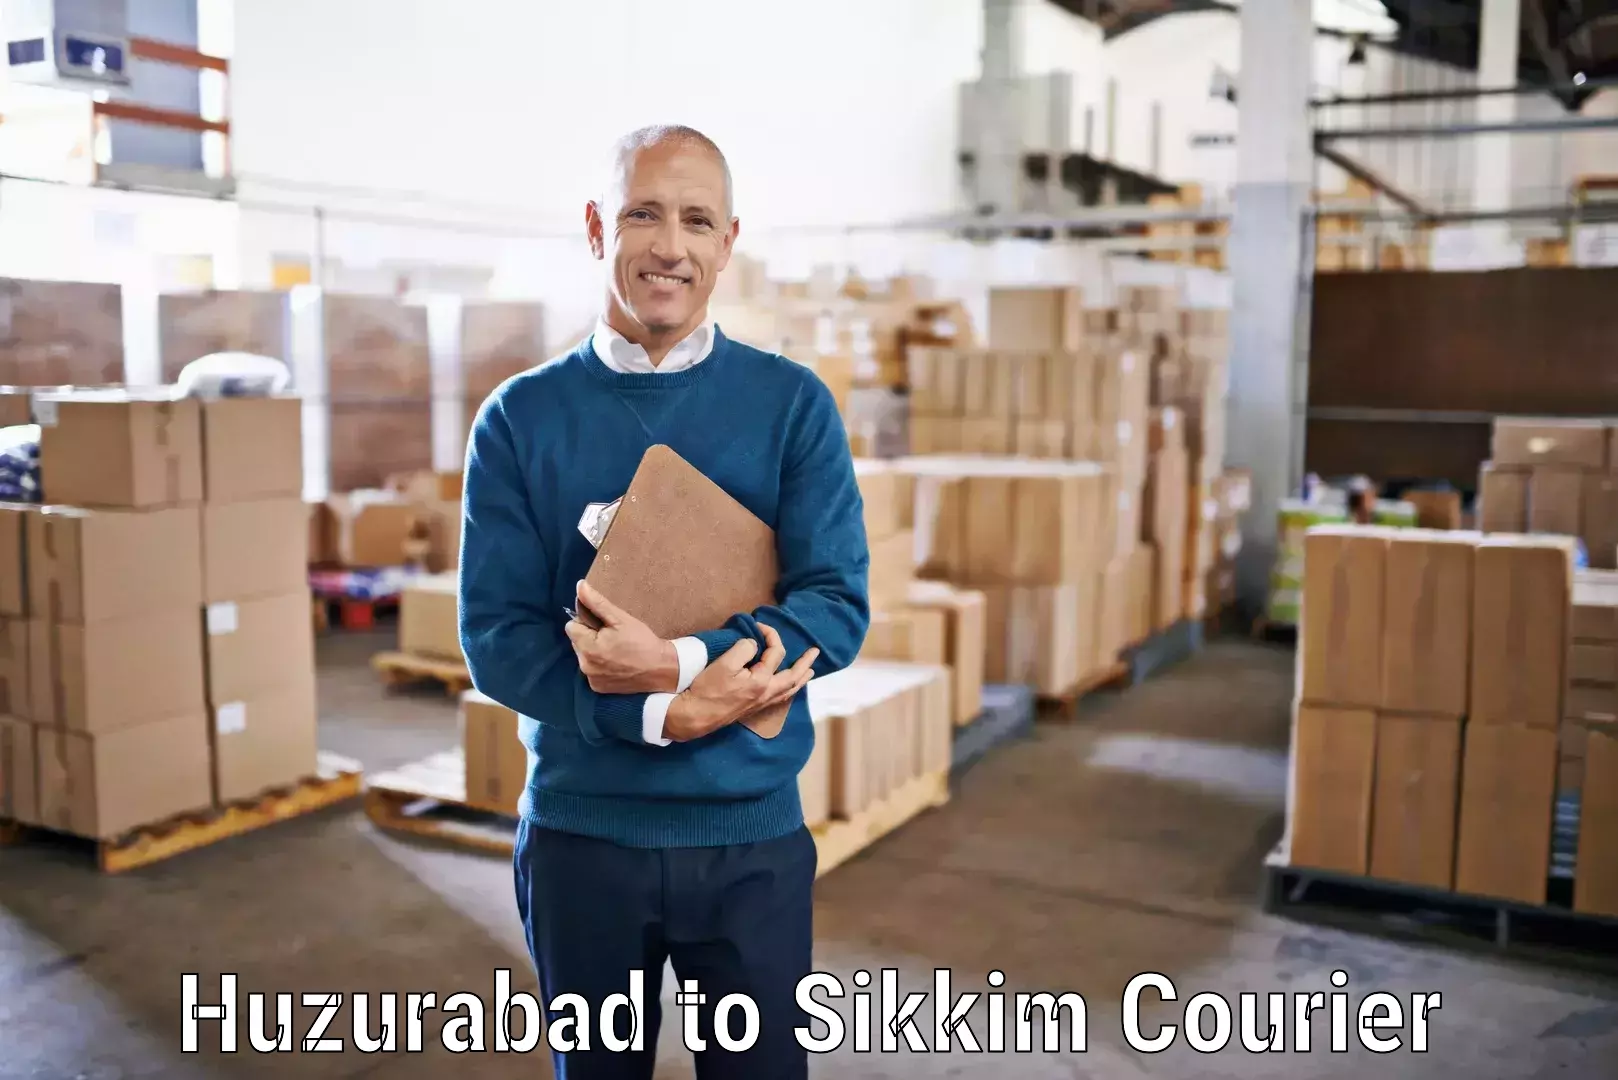 Cost-effective courier options in Huzurabad to Singtam